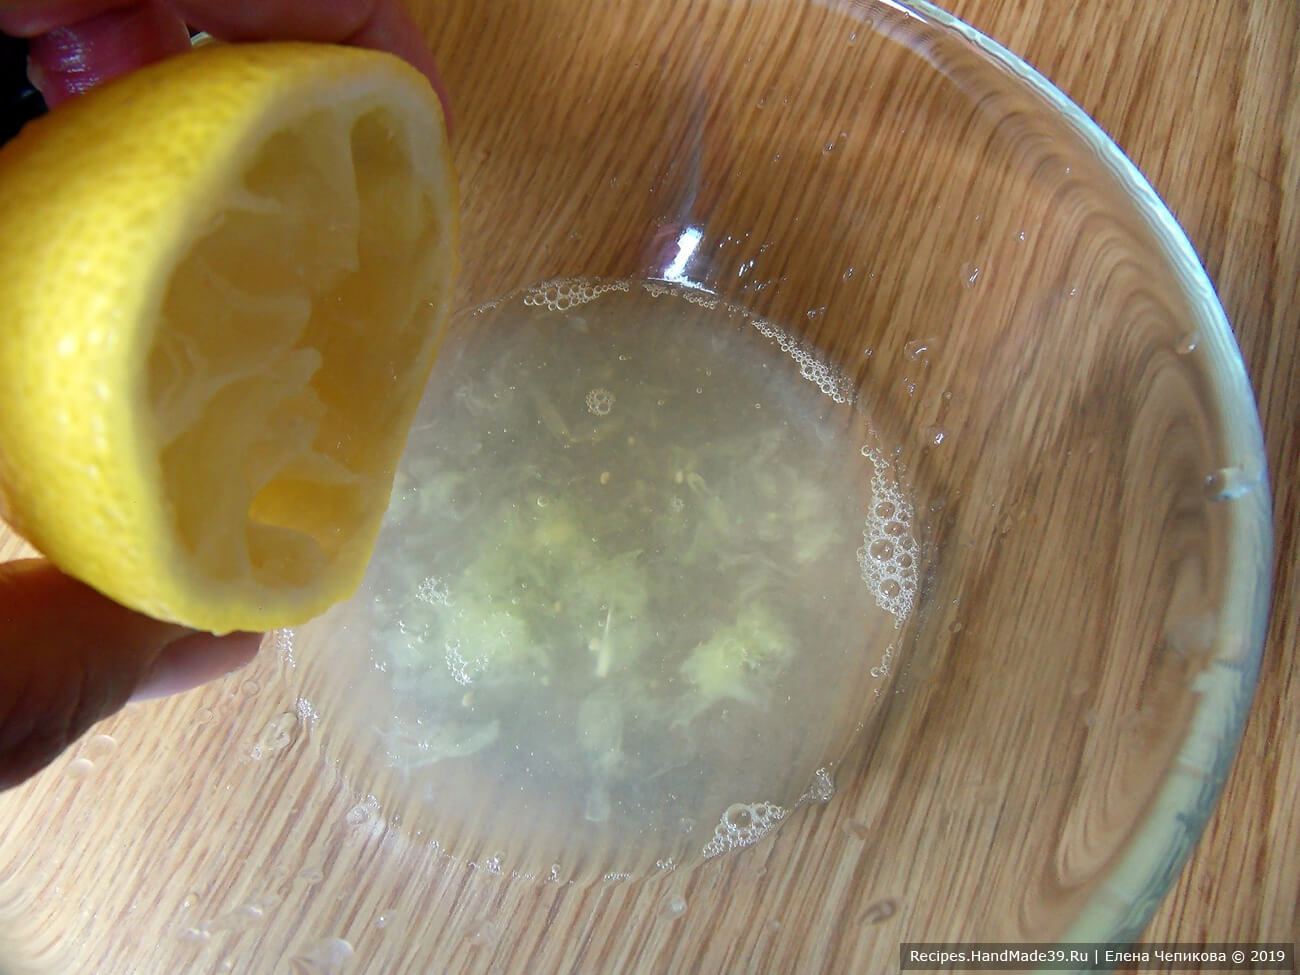 Приготовление заправки: выжать сок из половины лимона.